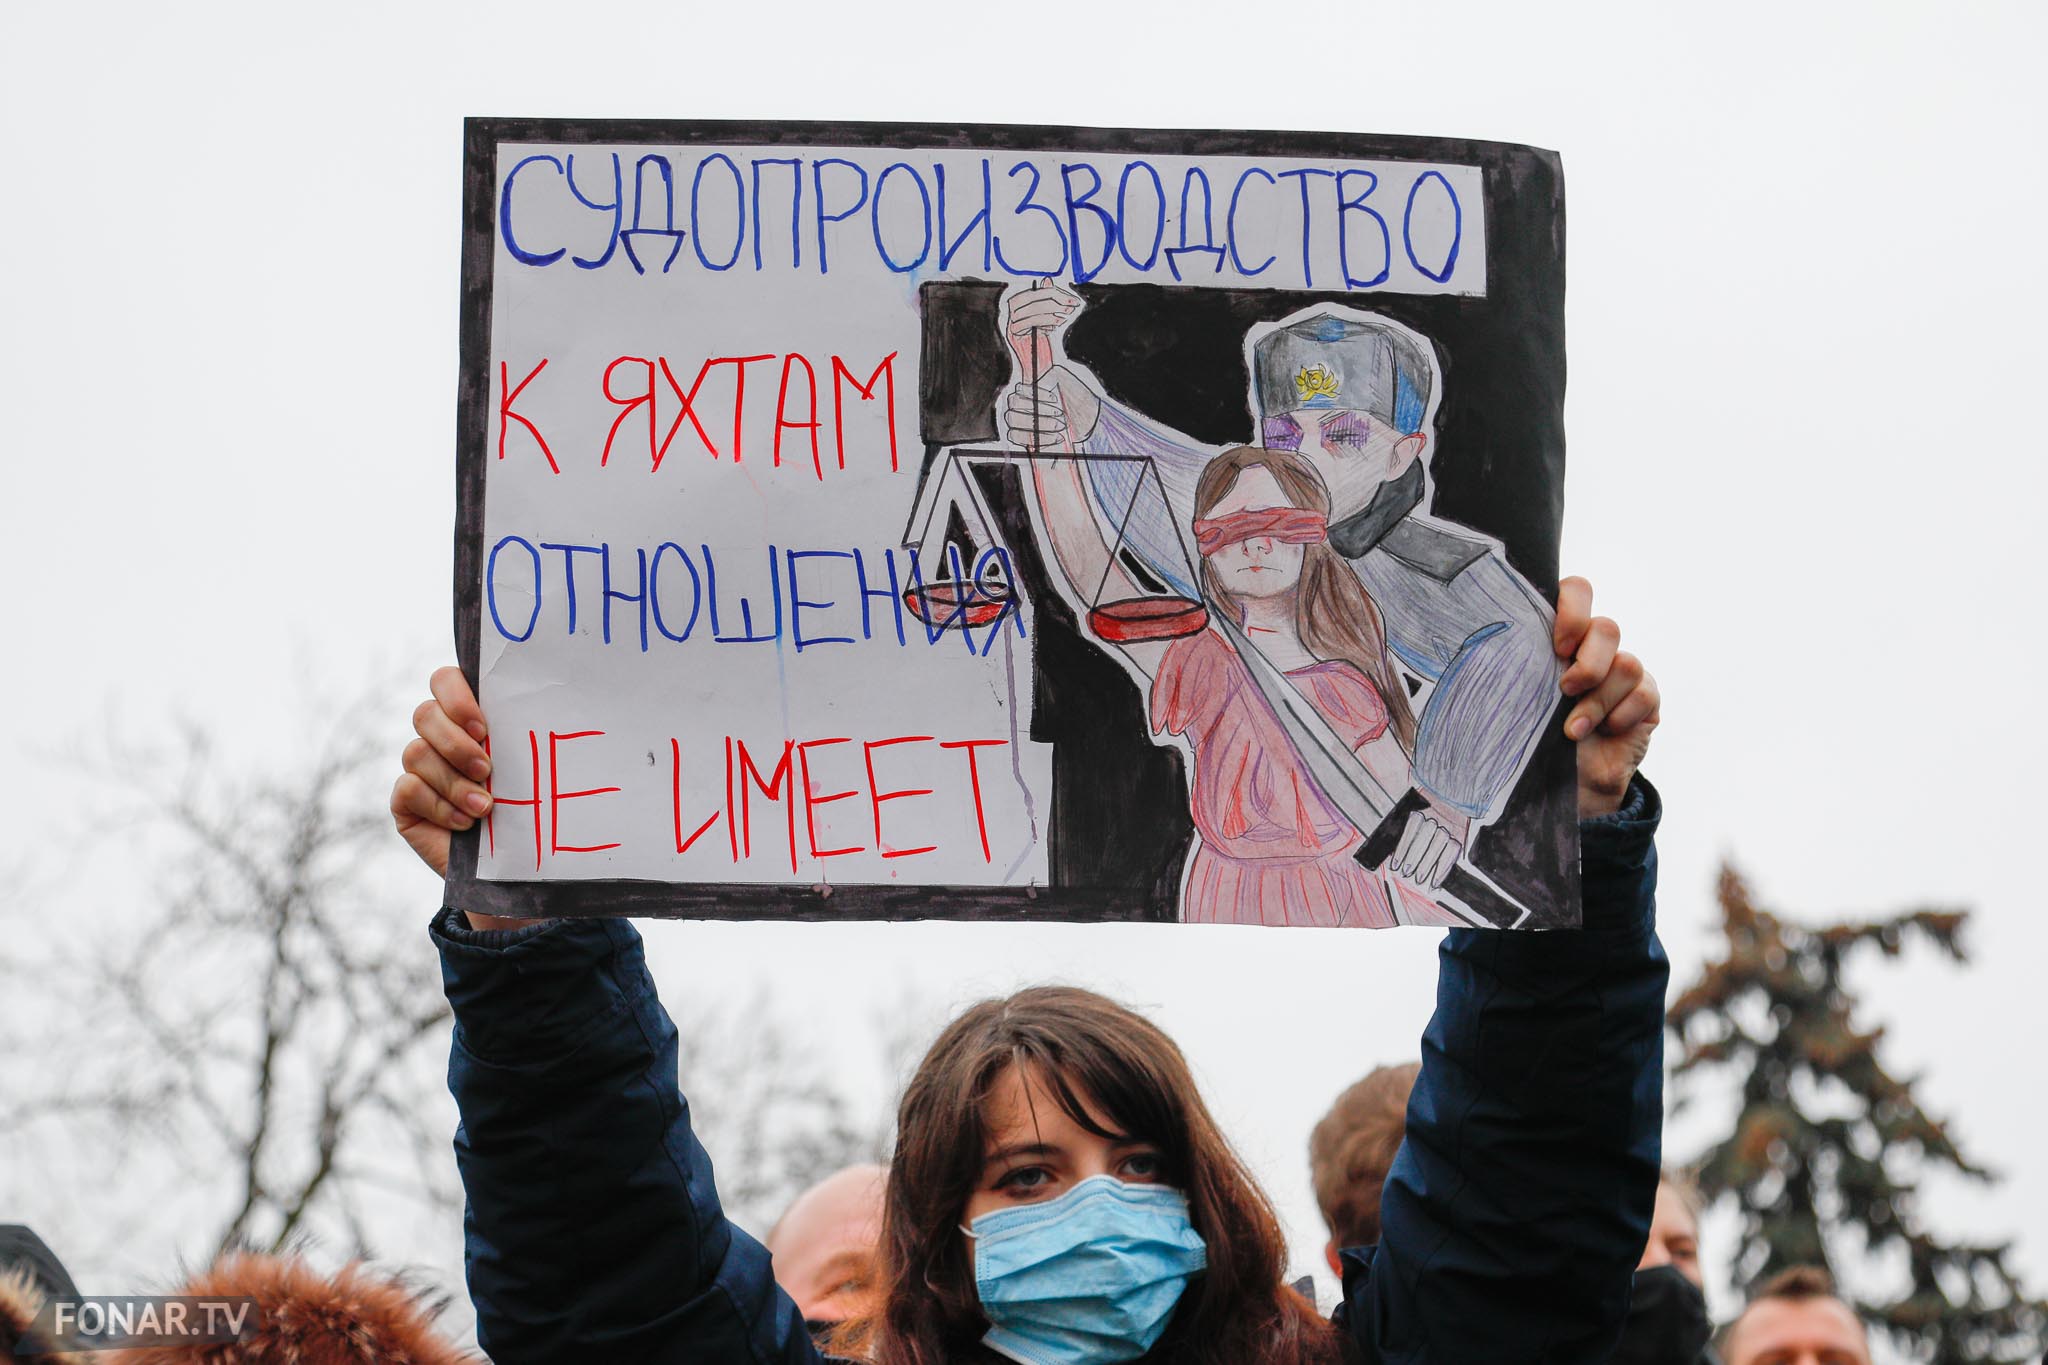 Митинг в Белгороде 23 января 2021. Свободу Навальному плакат. Арестовали девушку с плакатом. Штаб Навального девушка.